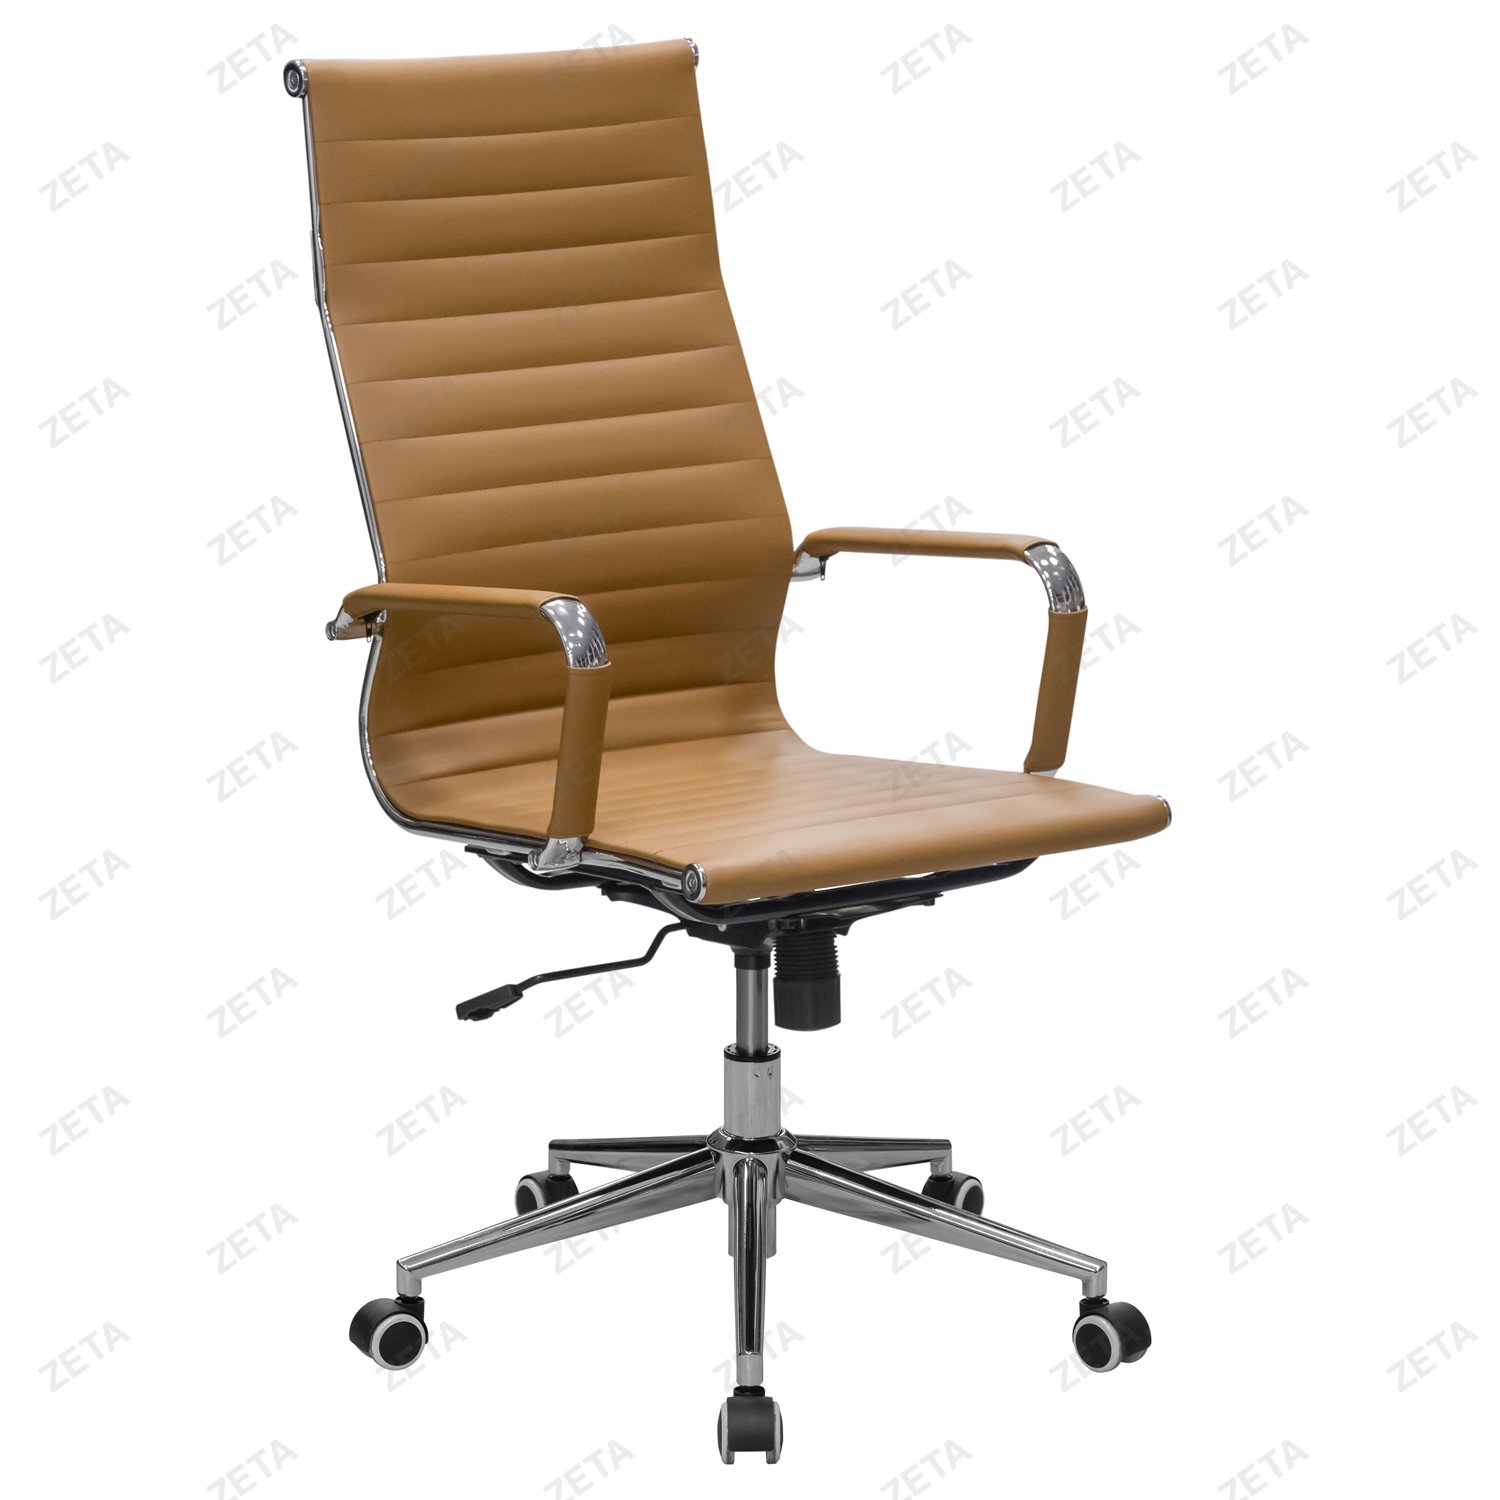 Кресло №5728-H (рыжее) - изображение 1